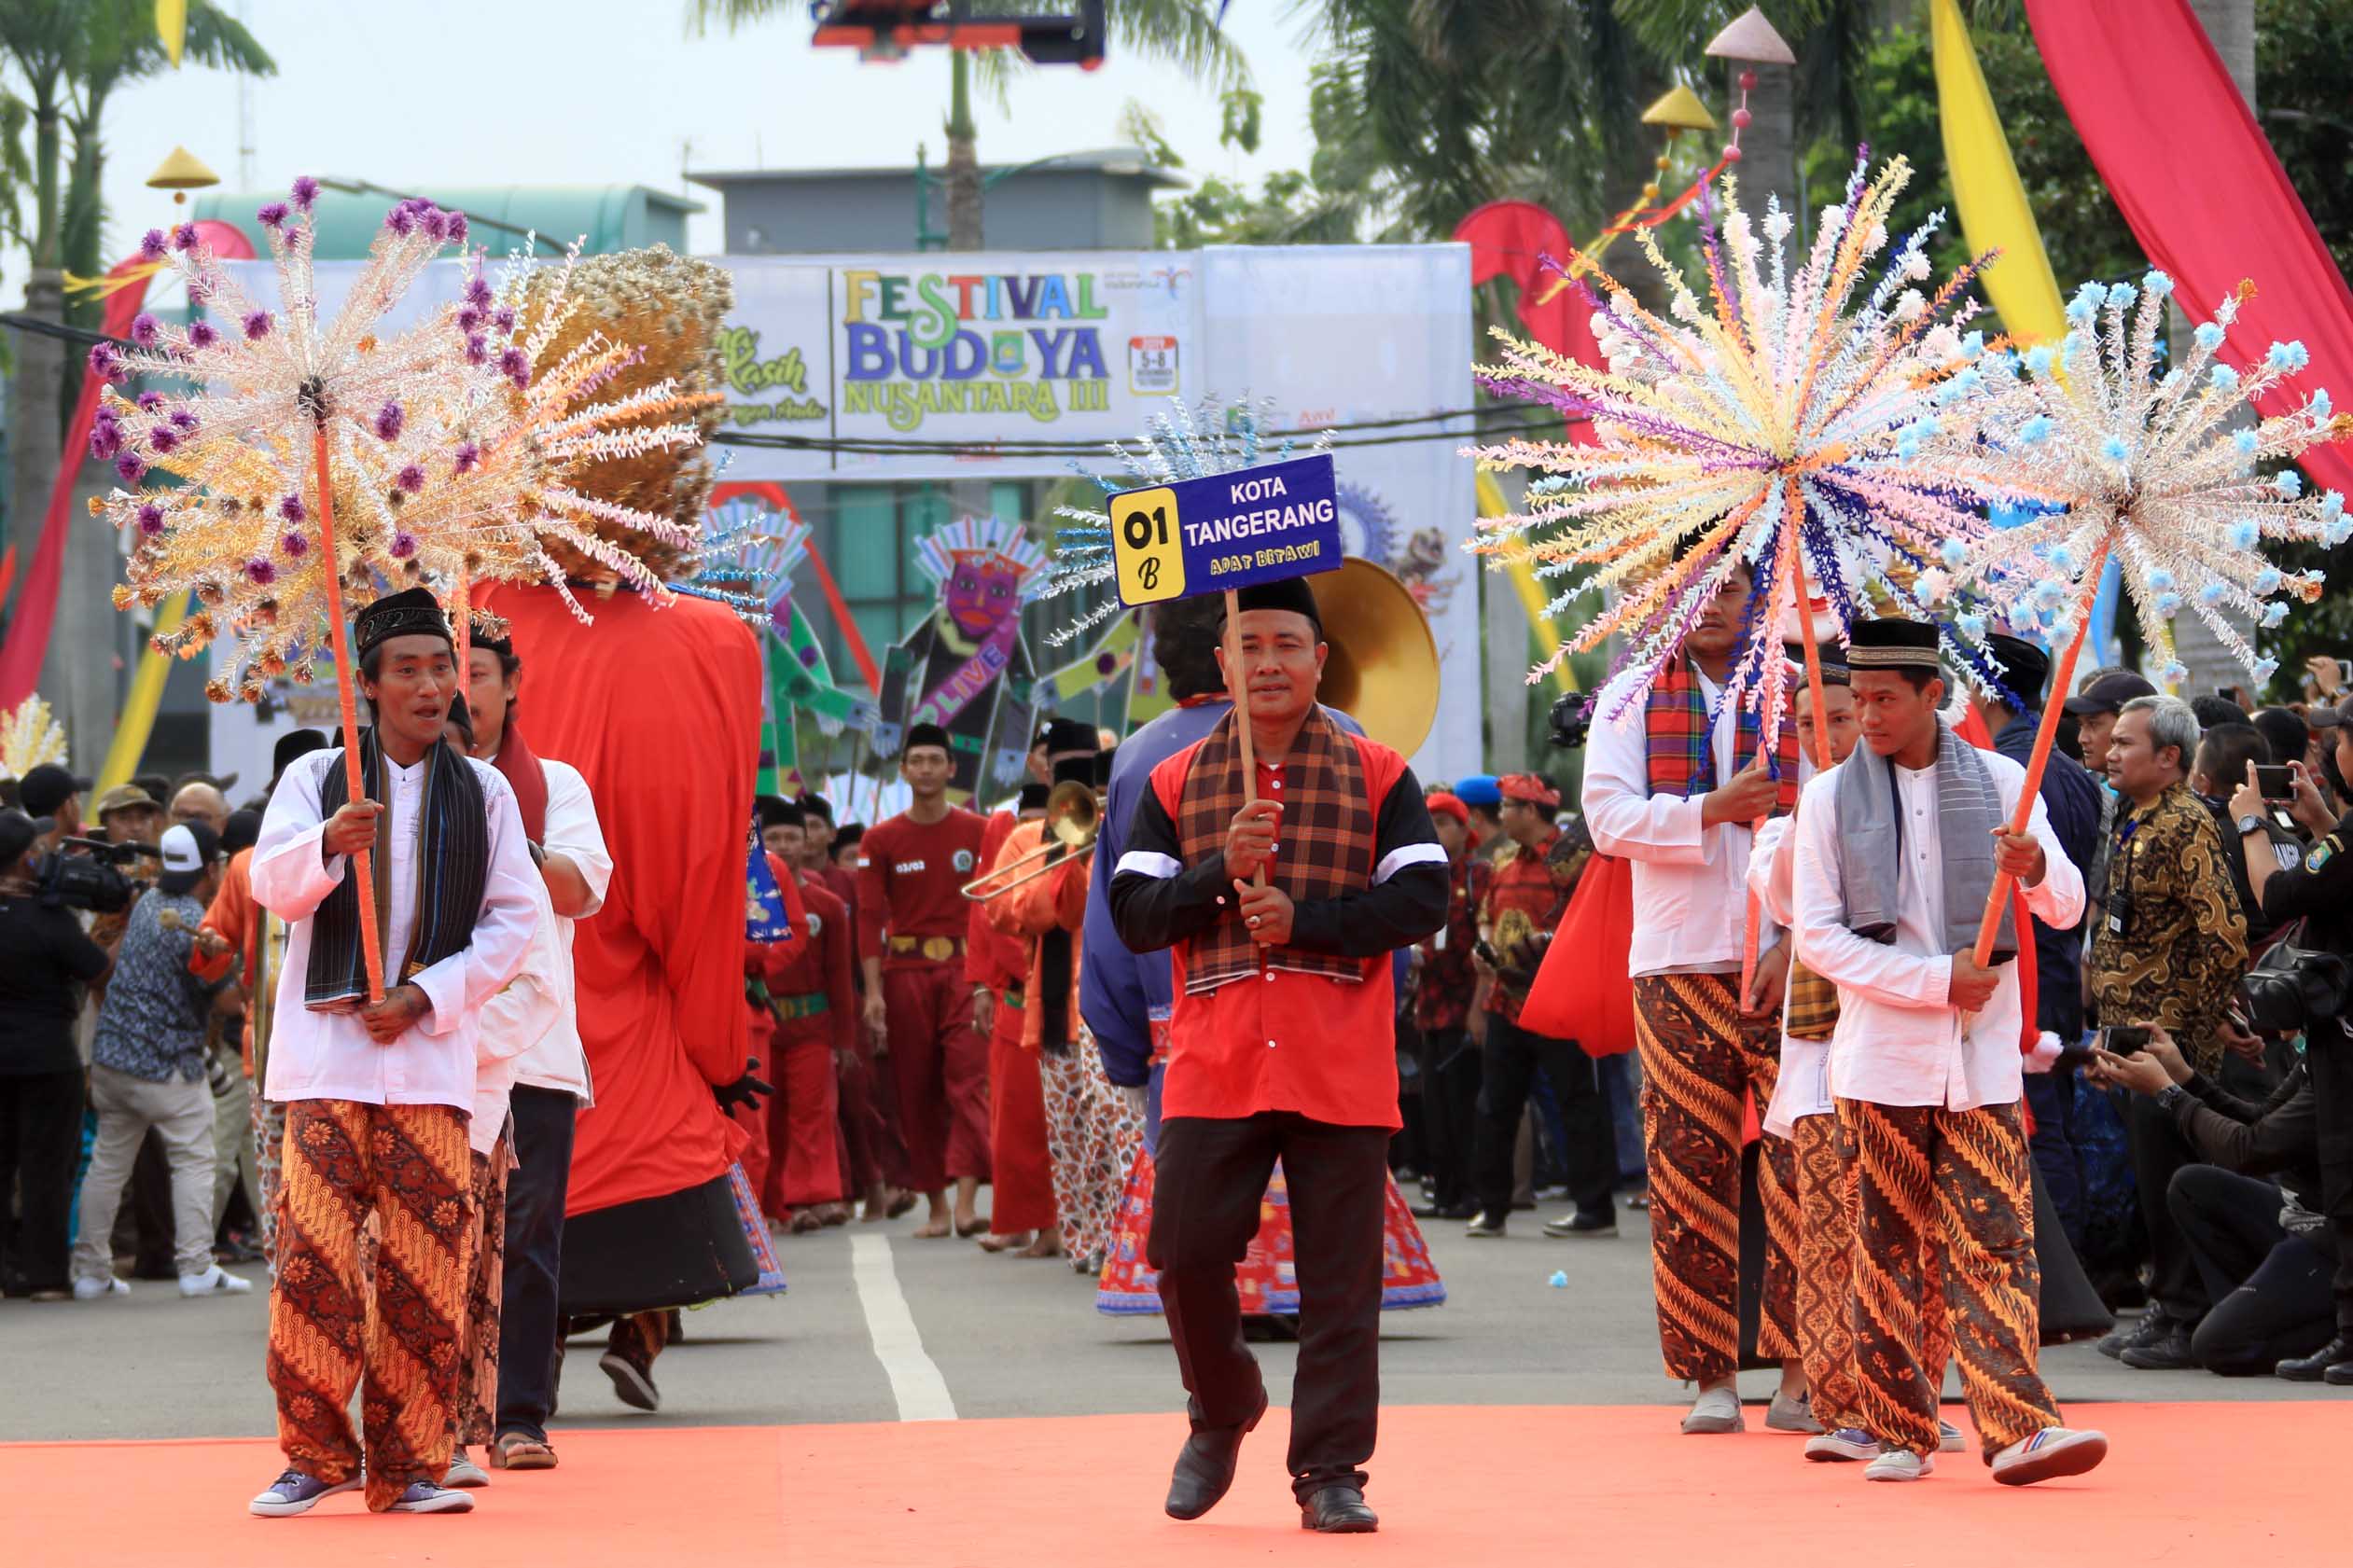 Exploring Indonesia: Memahami Keberagaman Budaya di Nusantara